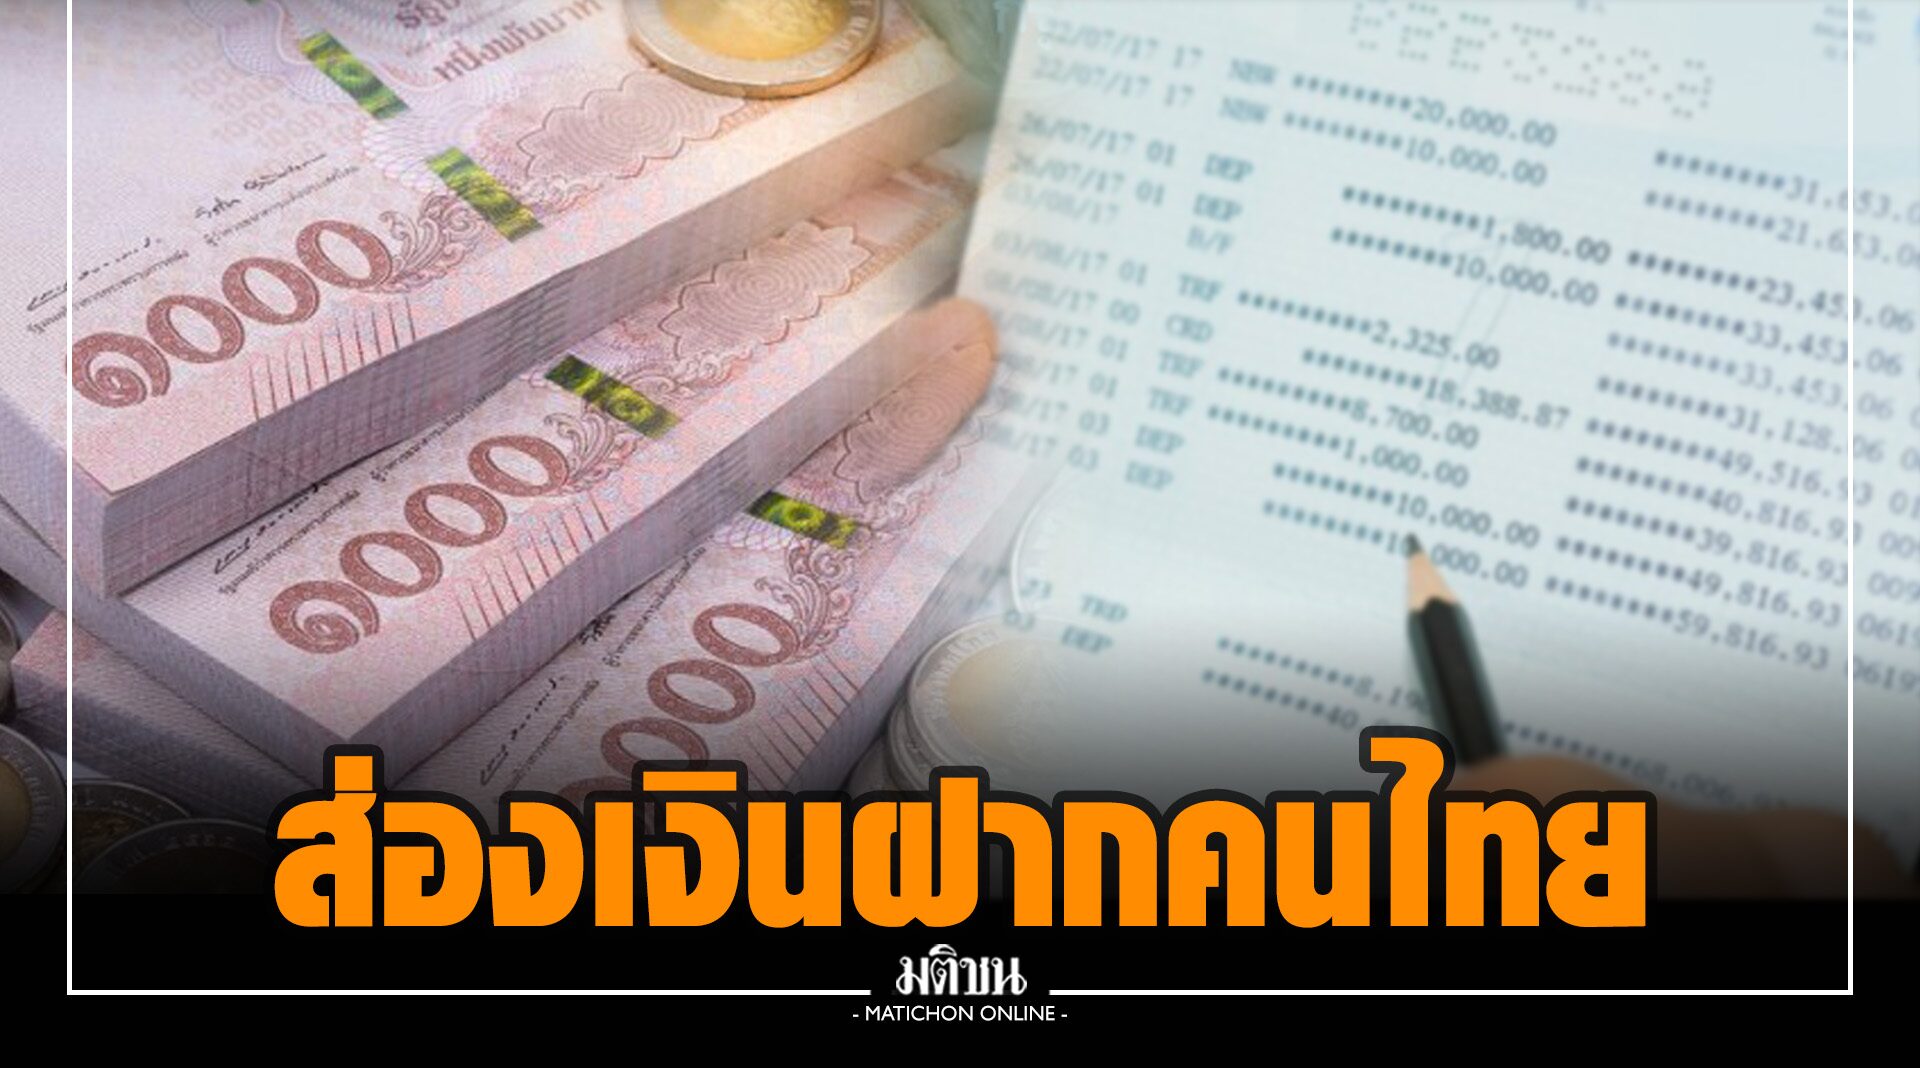 ส่องเงินฝากคนไทย ต่ำกว่า 5 แสน 100 ล้านบัญชี